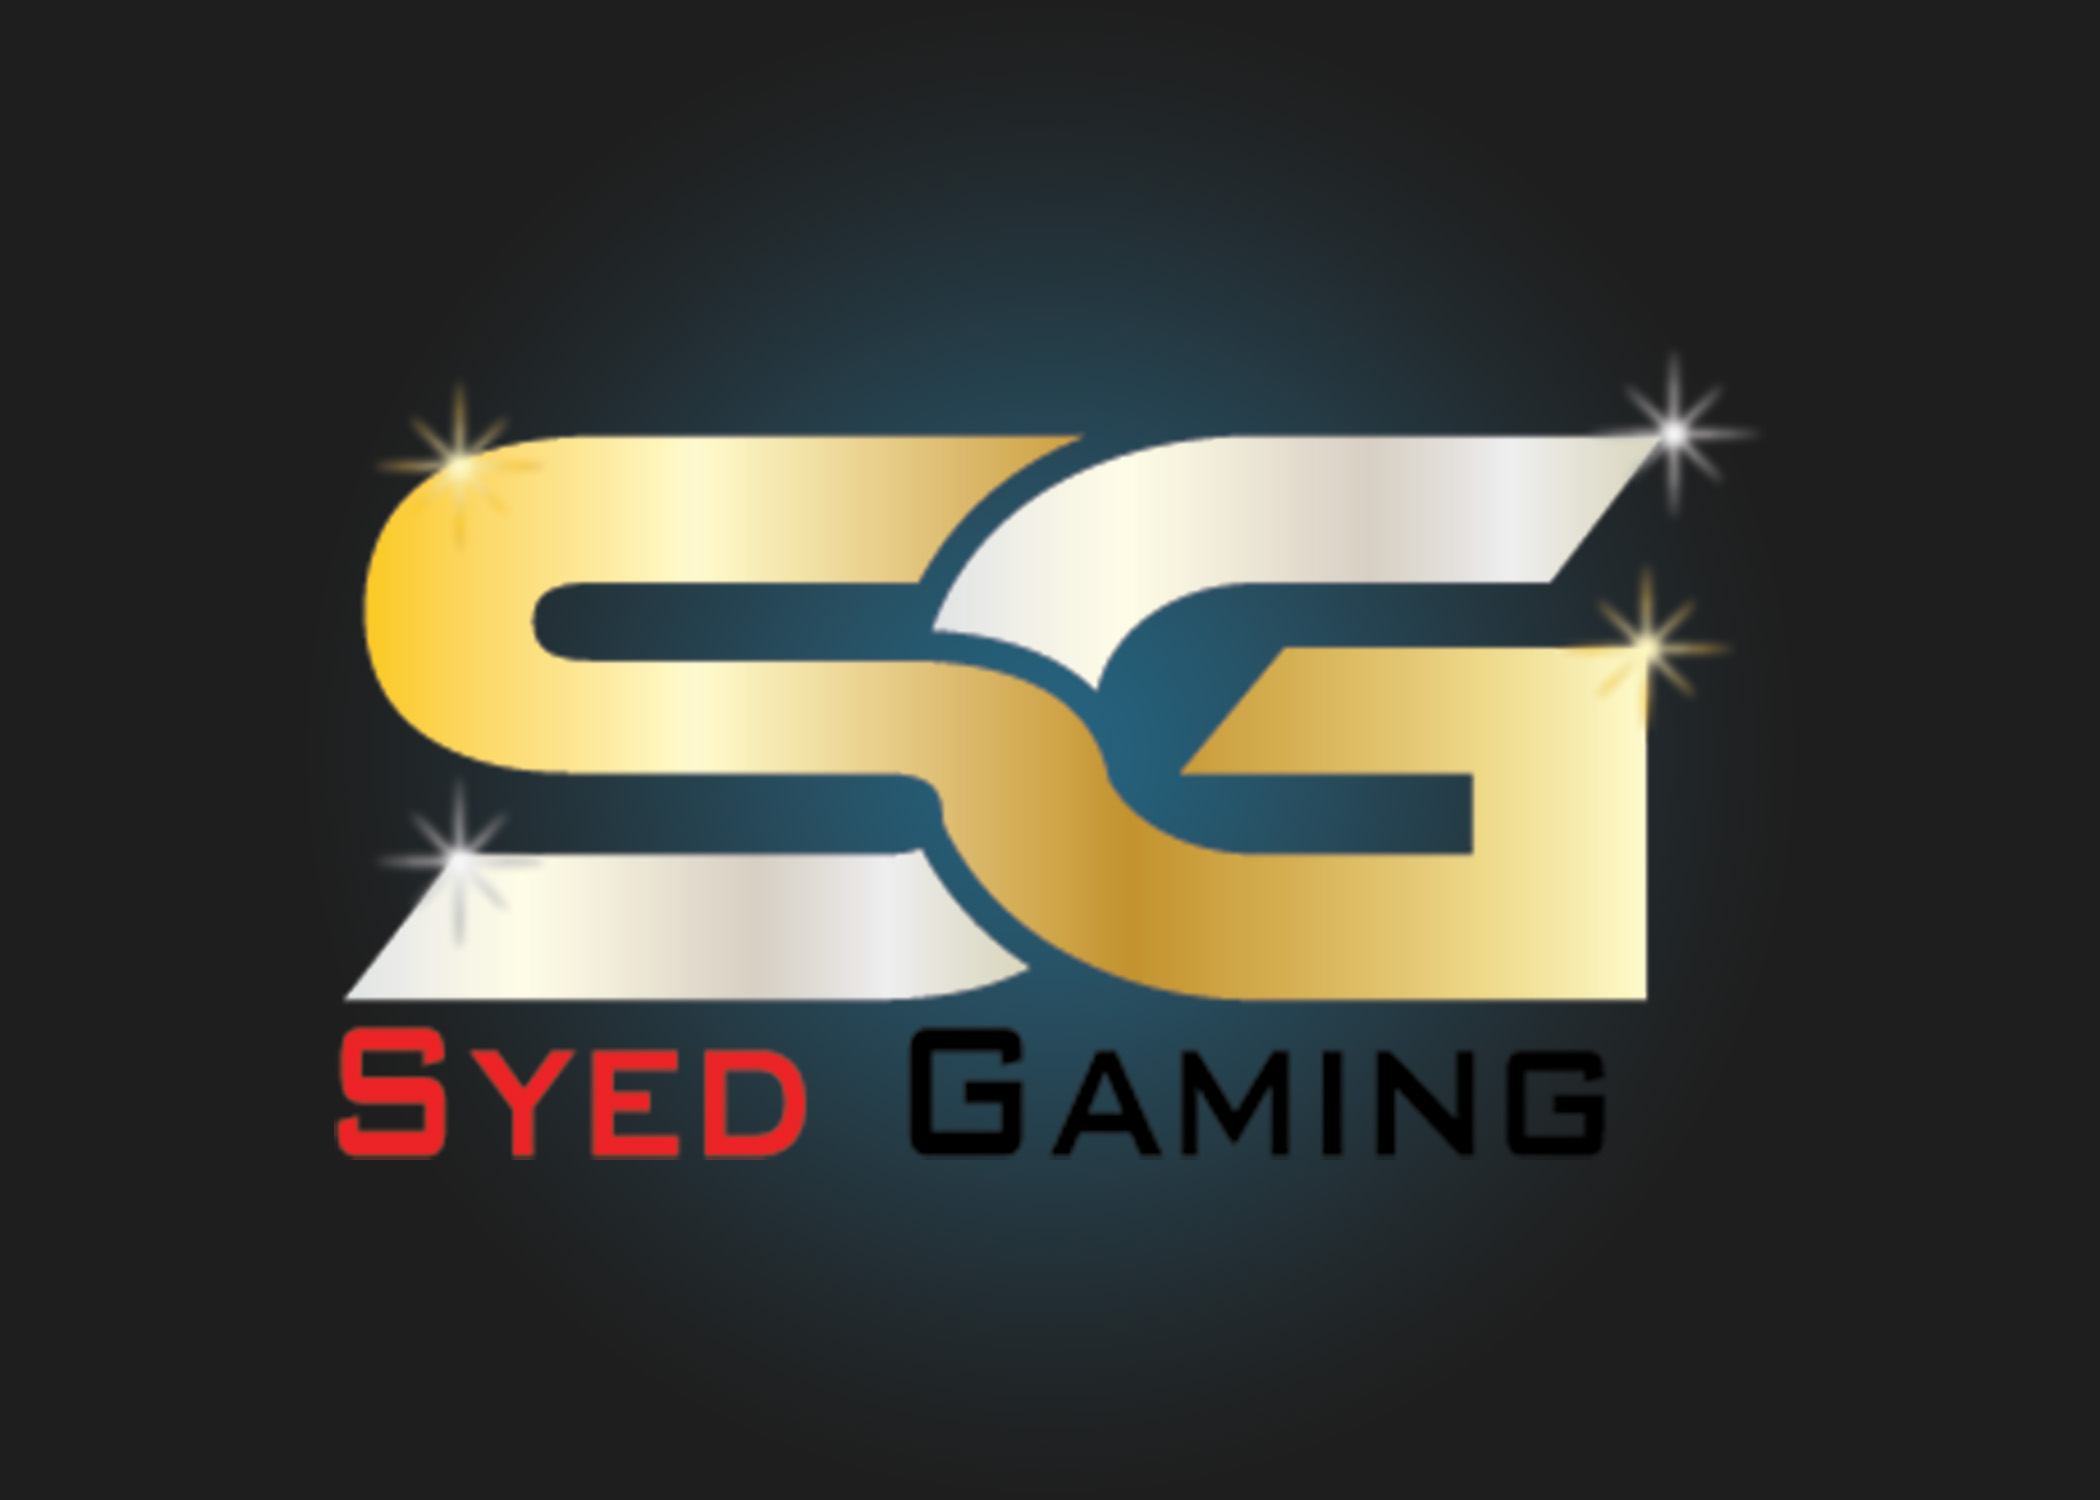 Syed Gaming